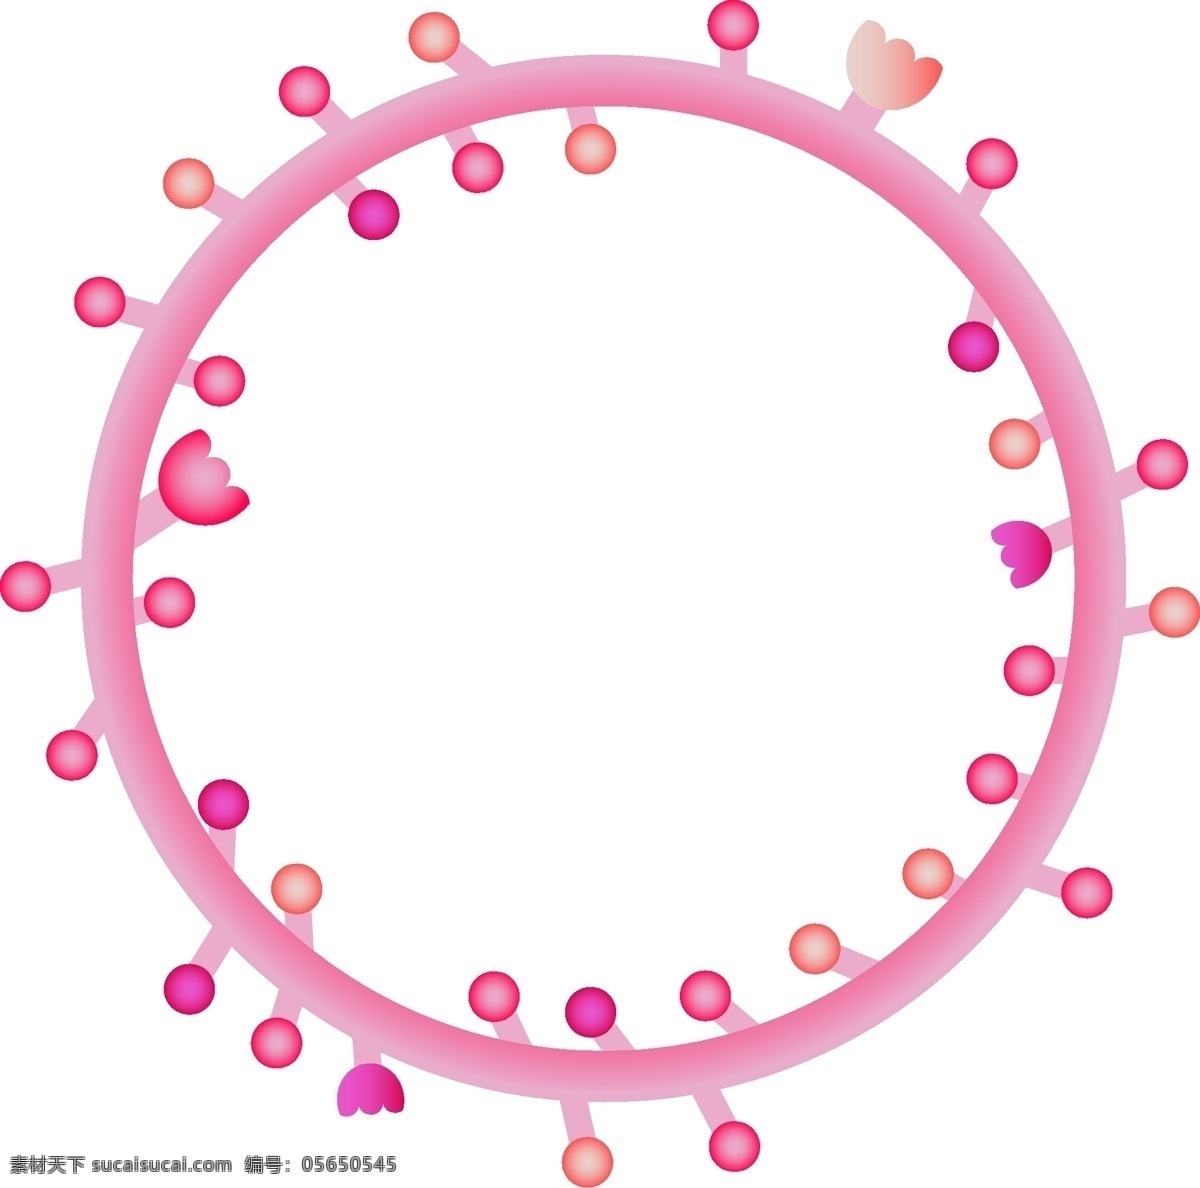 粉色 圆点 框框 插图 可爱的框框 圆圆的框框 花边框框 装饰边框 简约线条 抽象线条 唯美边框